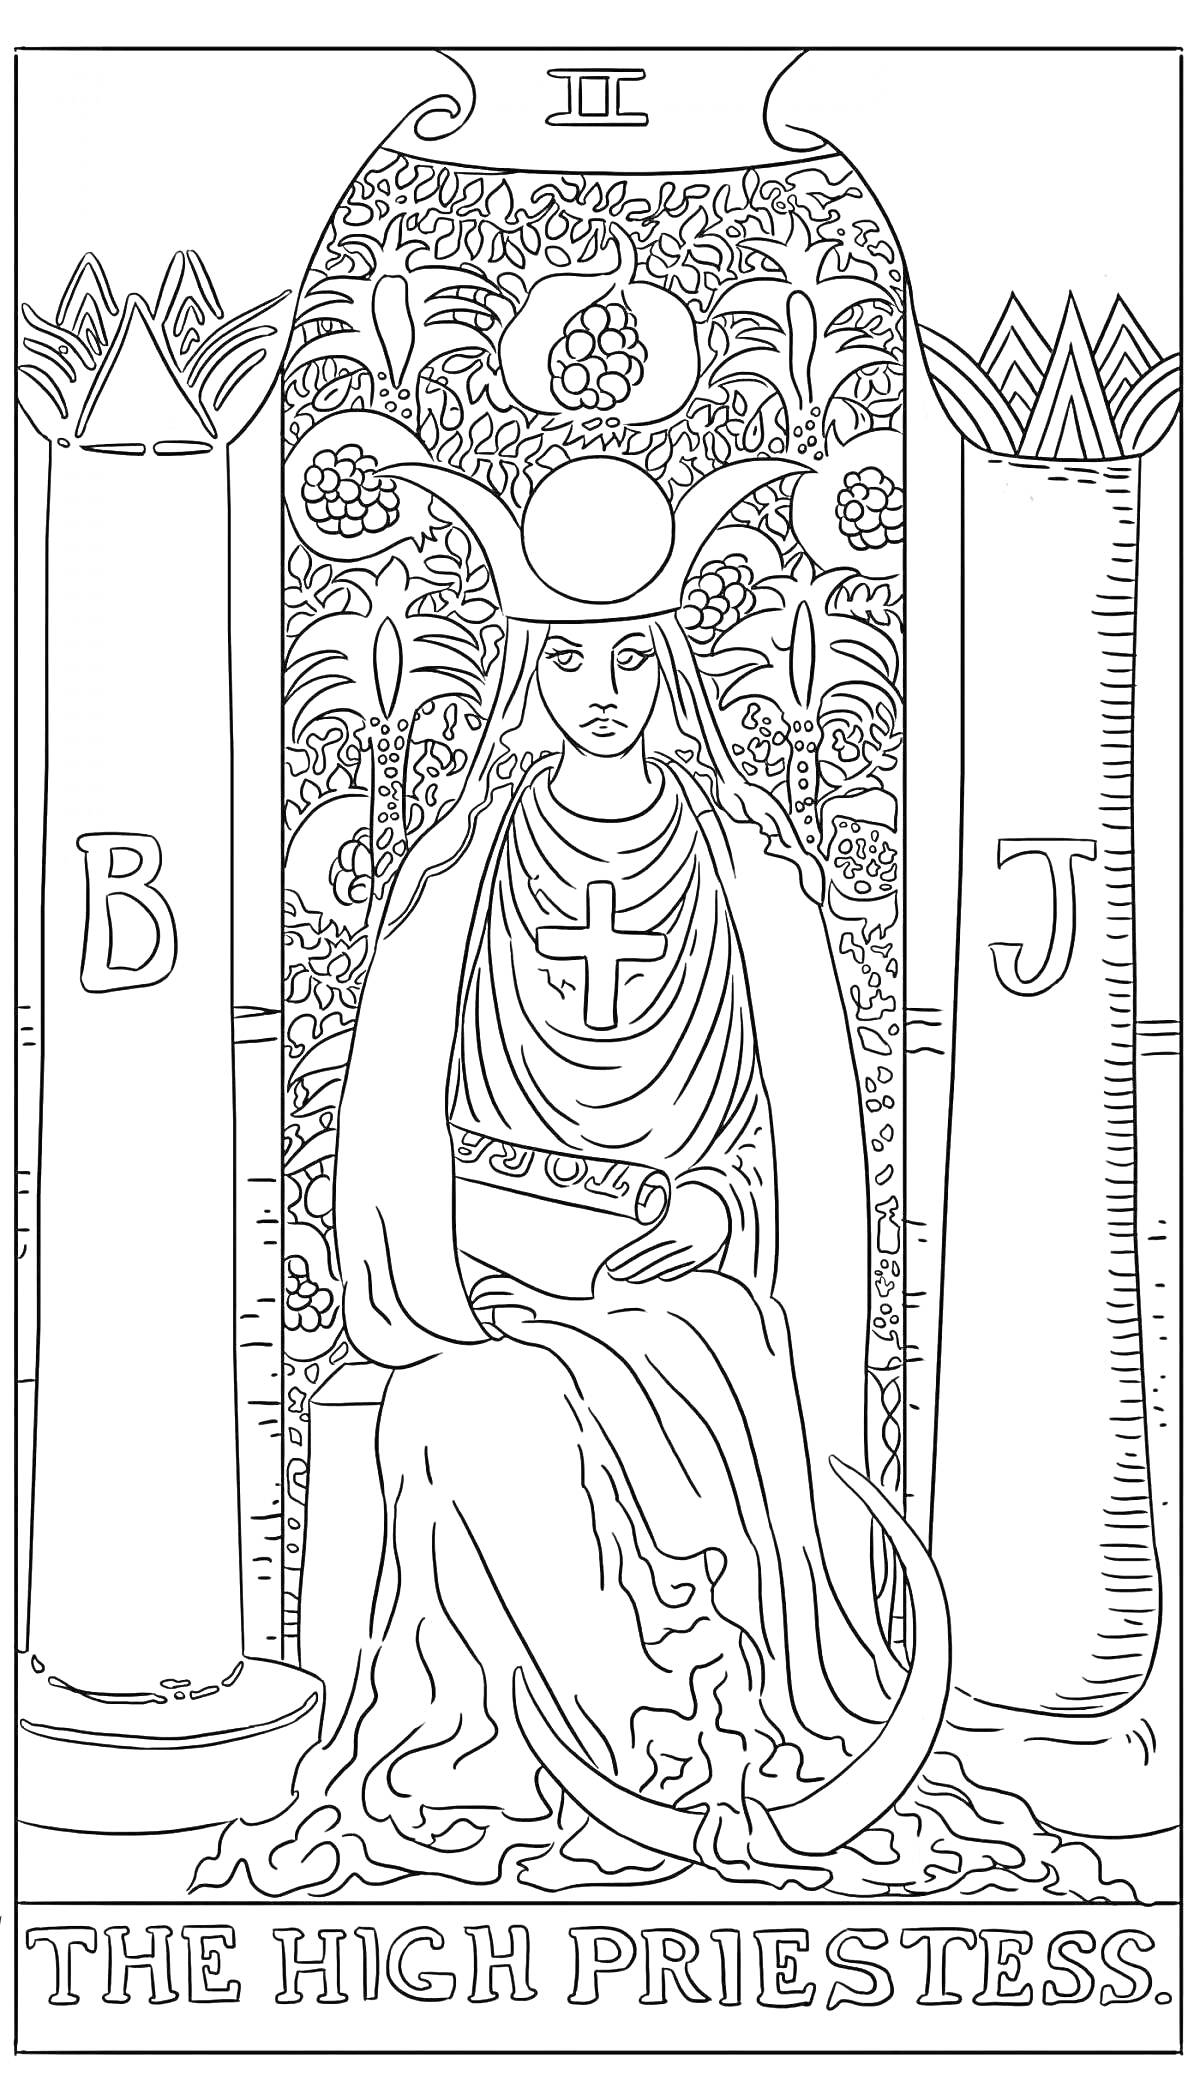 Раскраска Верховная Жрица: жрица в мантии с крестом, сидящая между двумя колоннами с буквами B и J, луна у ног, позади цветочный фон